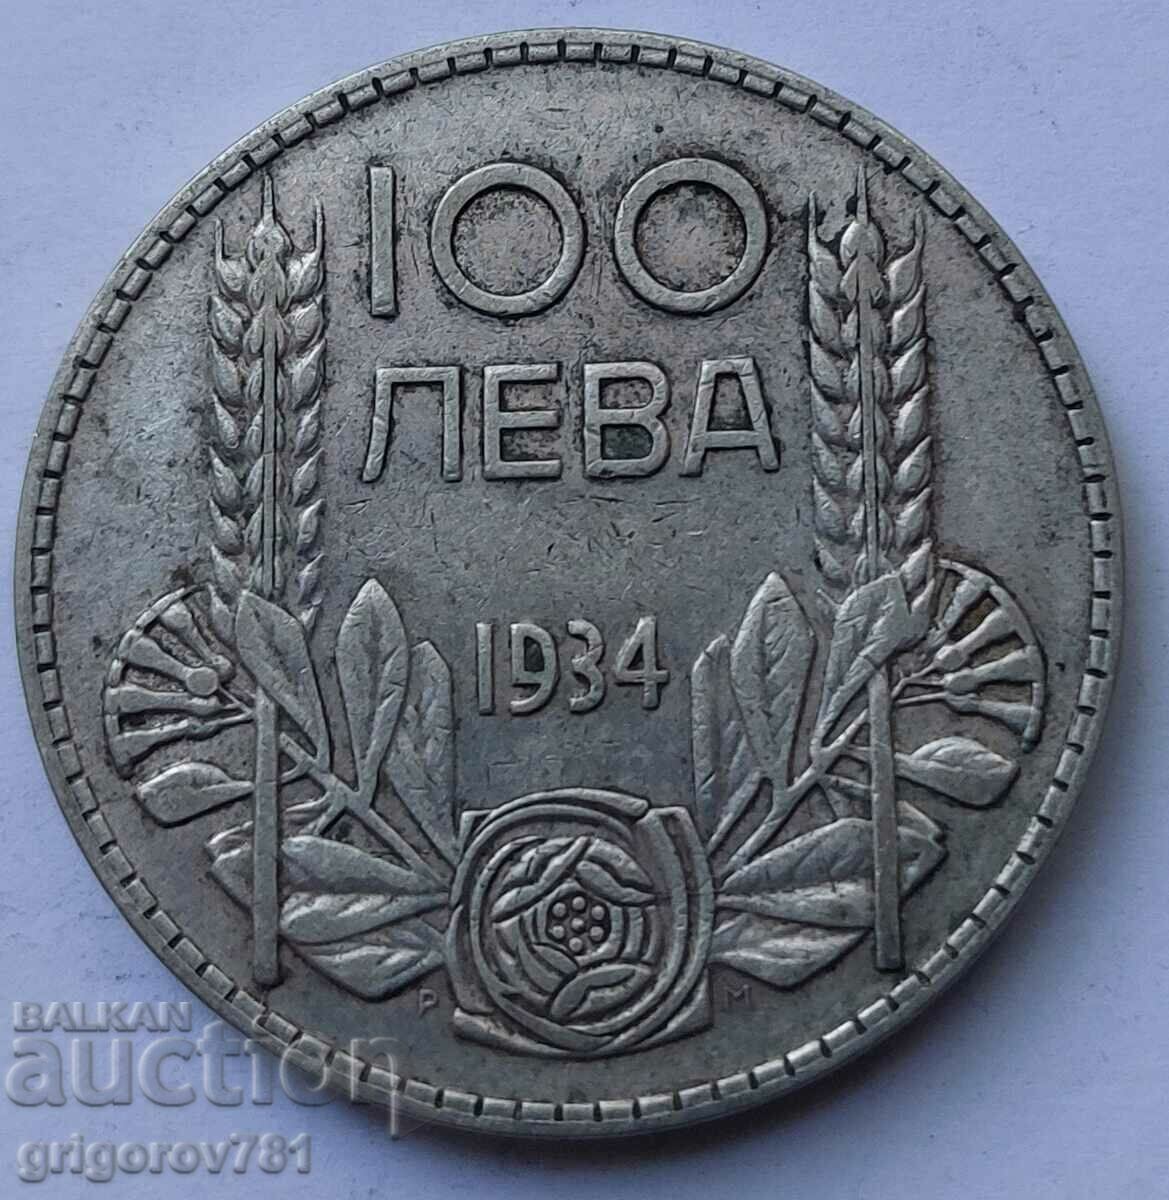 Ασήμι 100 λέβα Βουλγαρία 1934 - ασημένιο νόμισμα #57